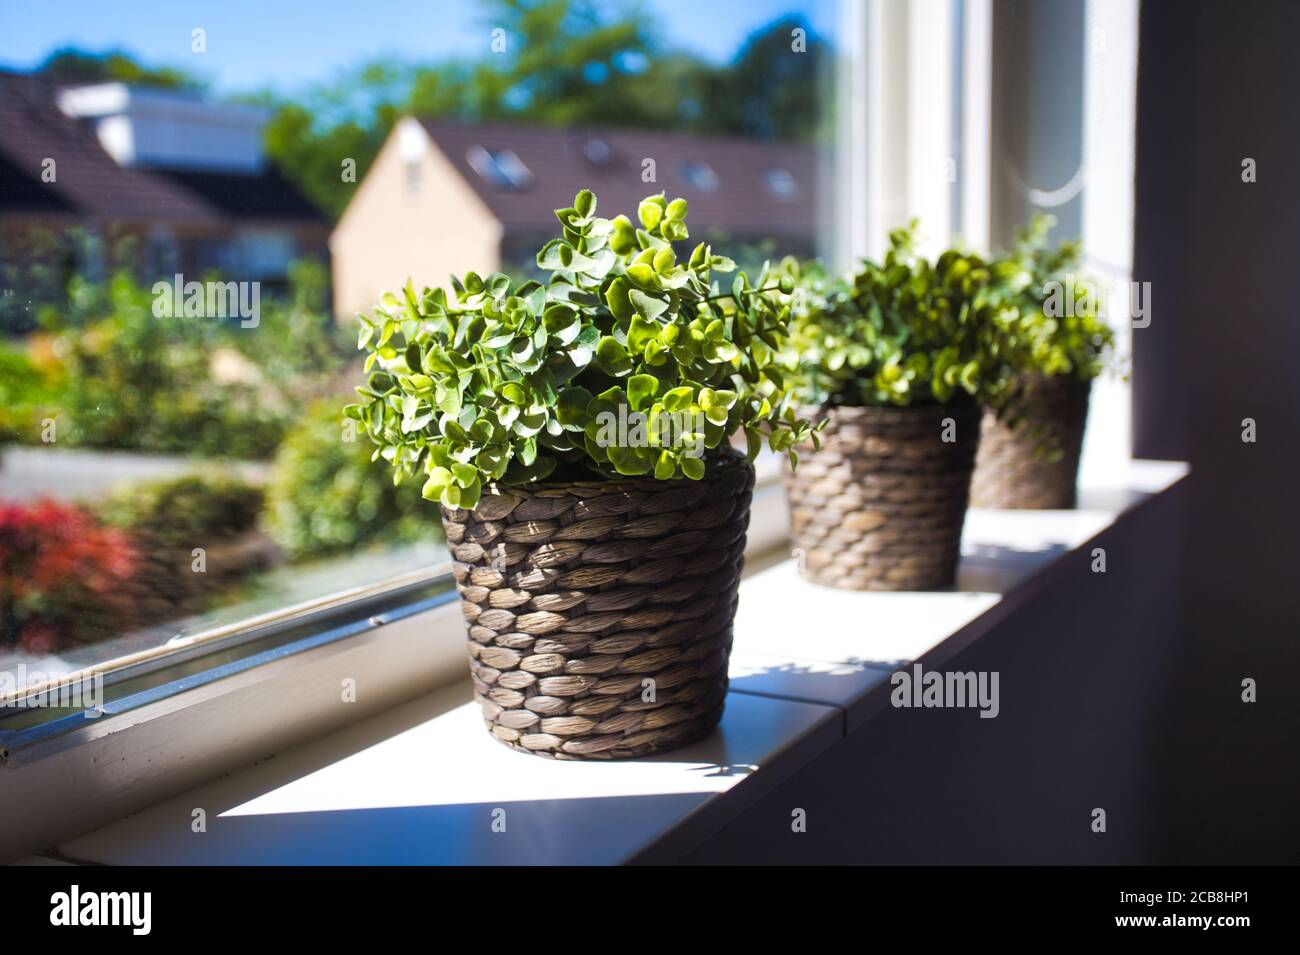 Trois plantes vertes dans des paniers en osier sur le rebord de la fenêtre d'une belle maison dans un quartier, vue sur les maisons par la fenêtre, intérieur rétro moderne Banque D'Images